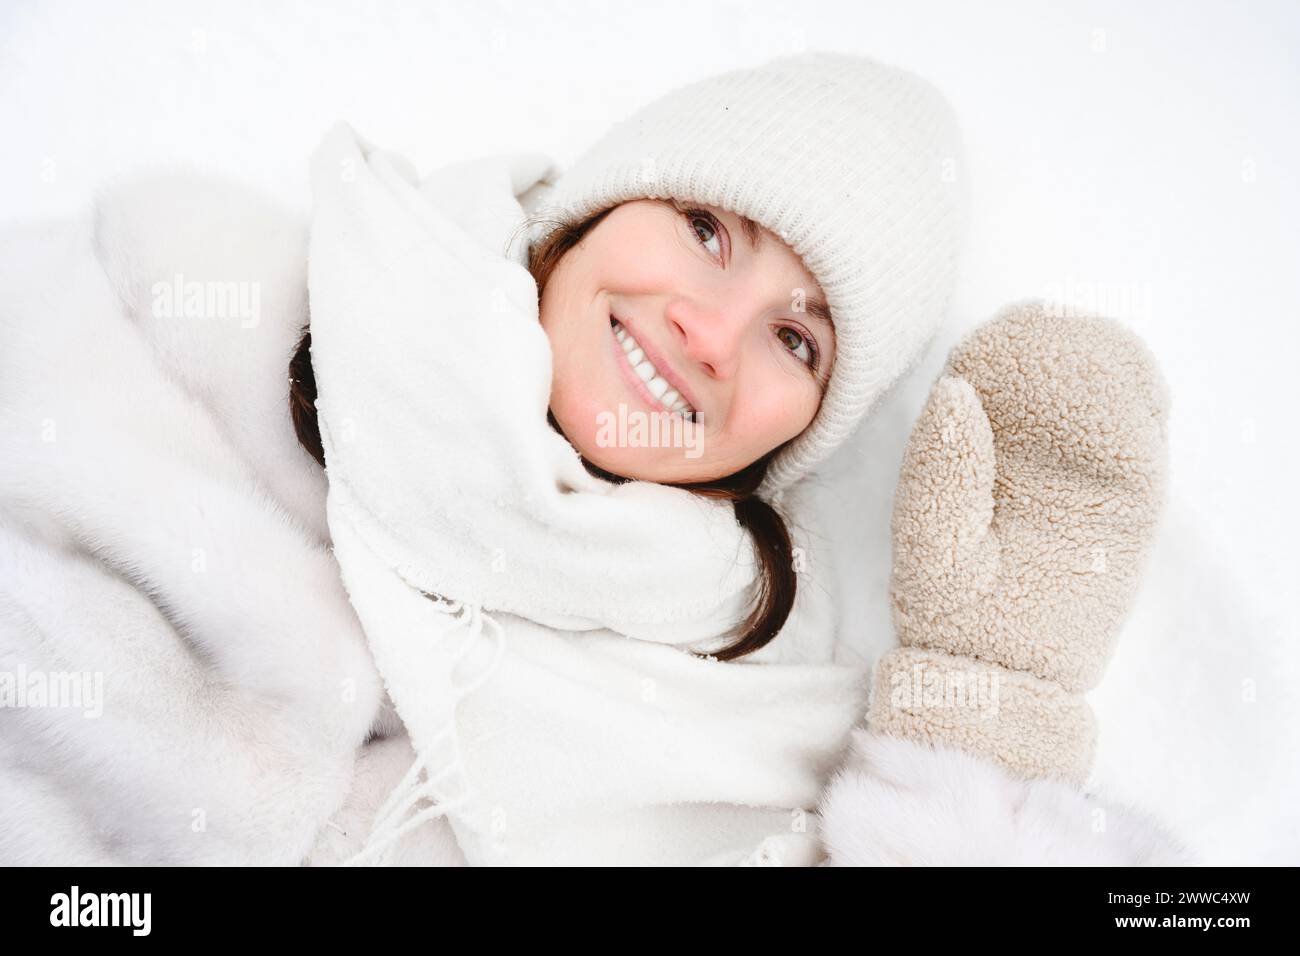 Donna sorridente sdraiata sulla neve in abiti caldi Foto Stock